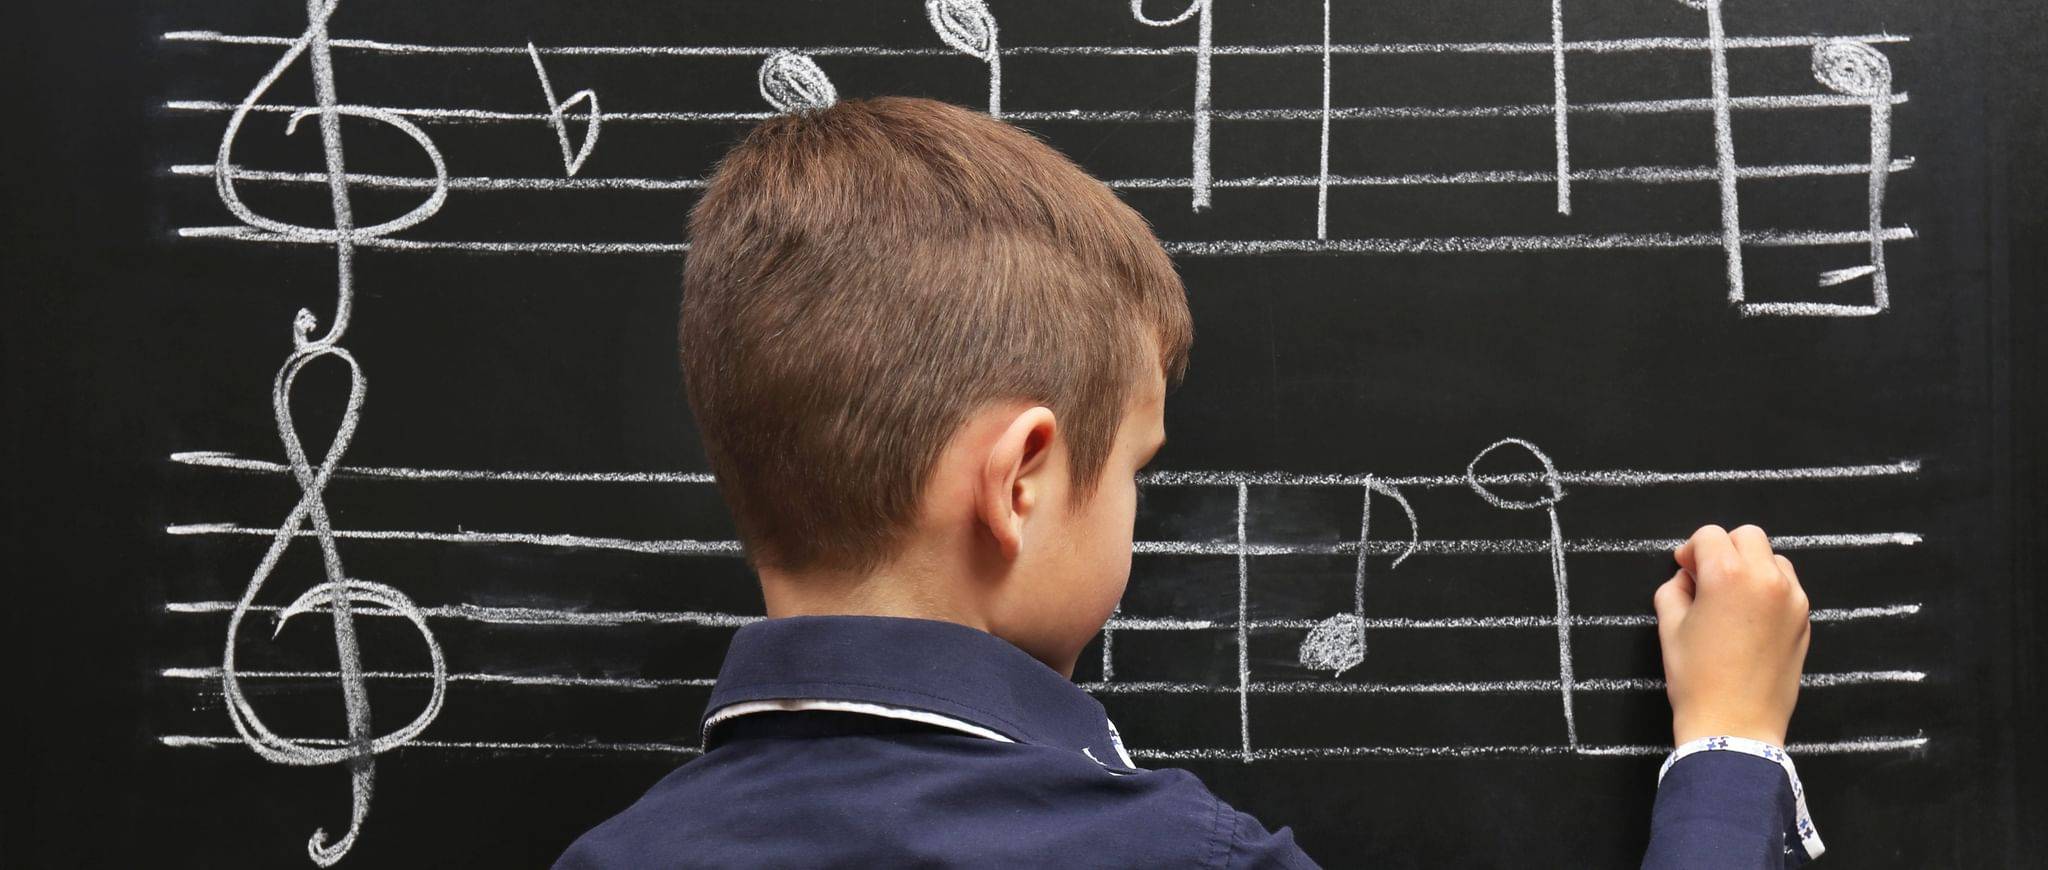 Дополнительное образование: стоит ли "проблемным" детям обучаться музыке?